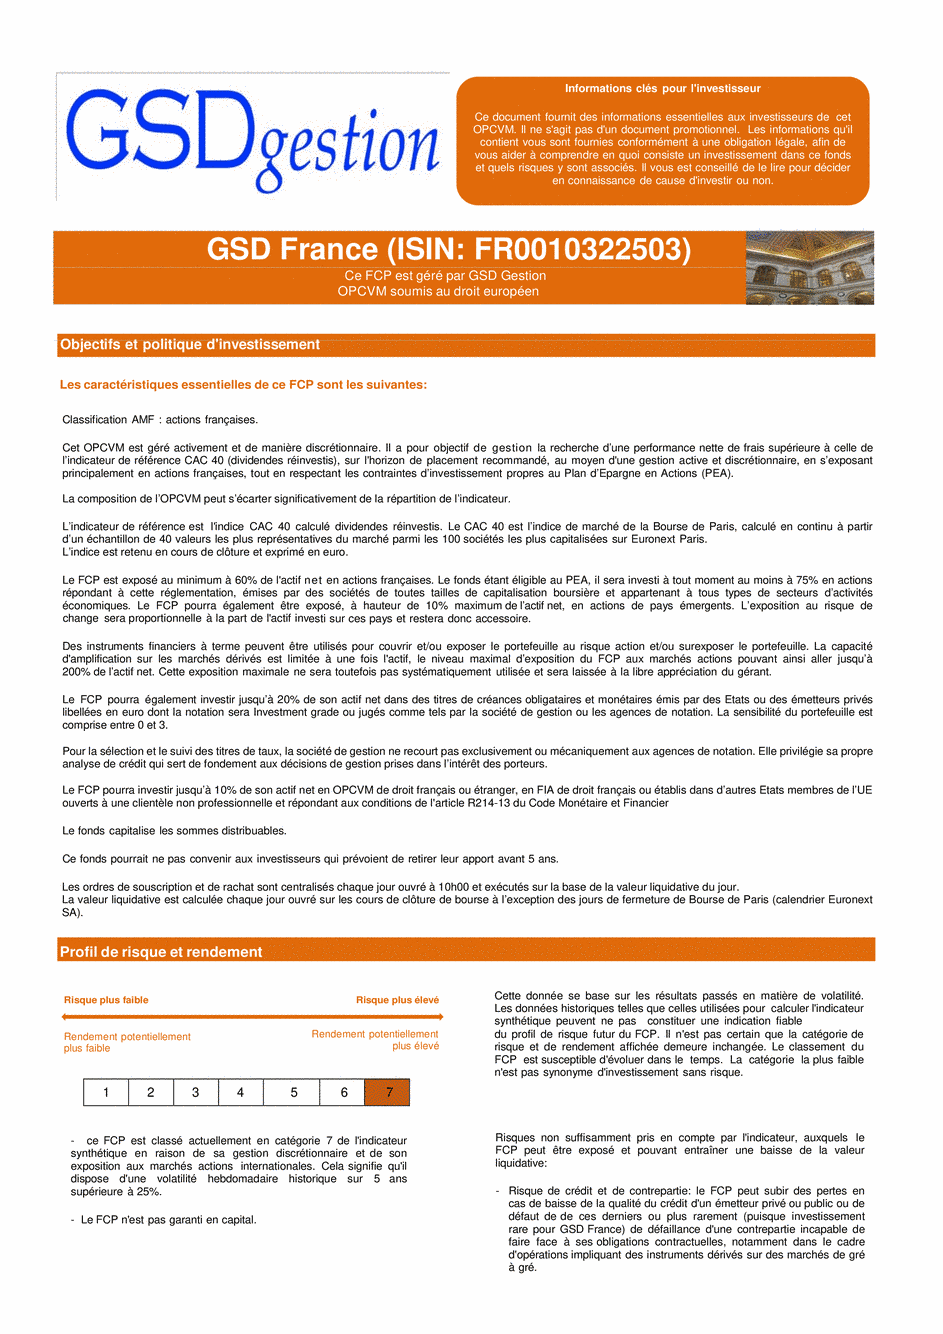 DICI-Prospectus Complet GSD France - 21/02/2022 - Français